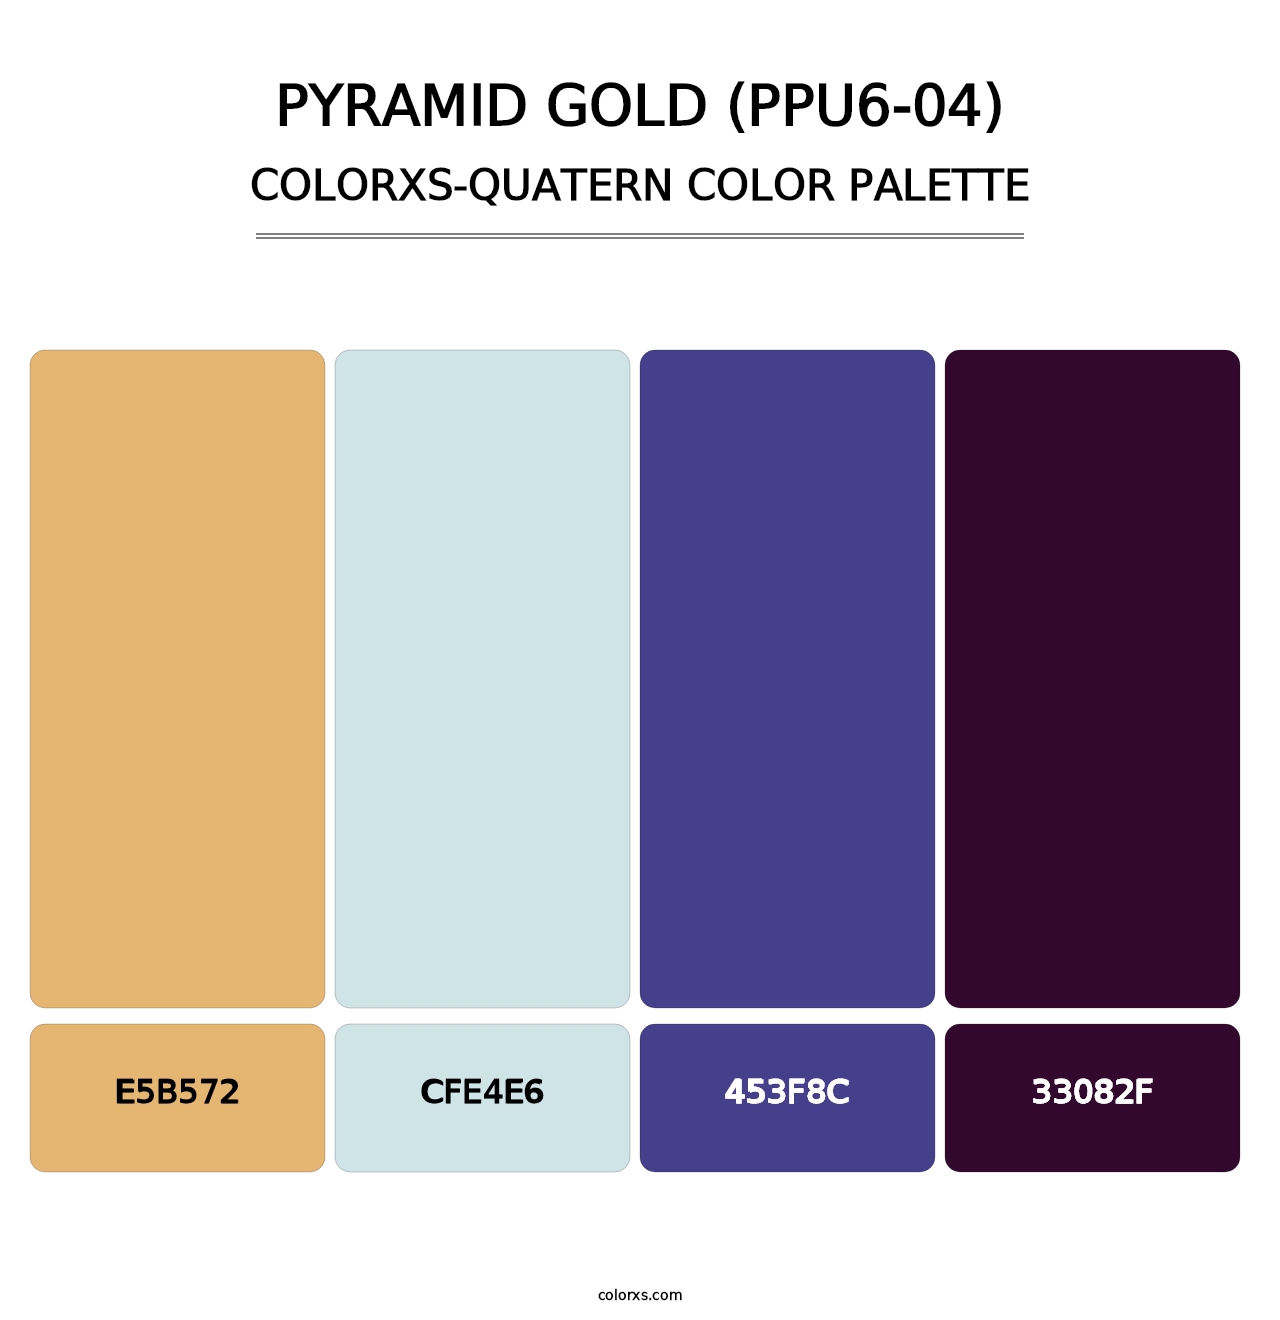 Pyramid Gold (PPU6-04) - Colorxs Quatern Palette